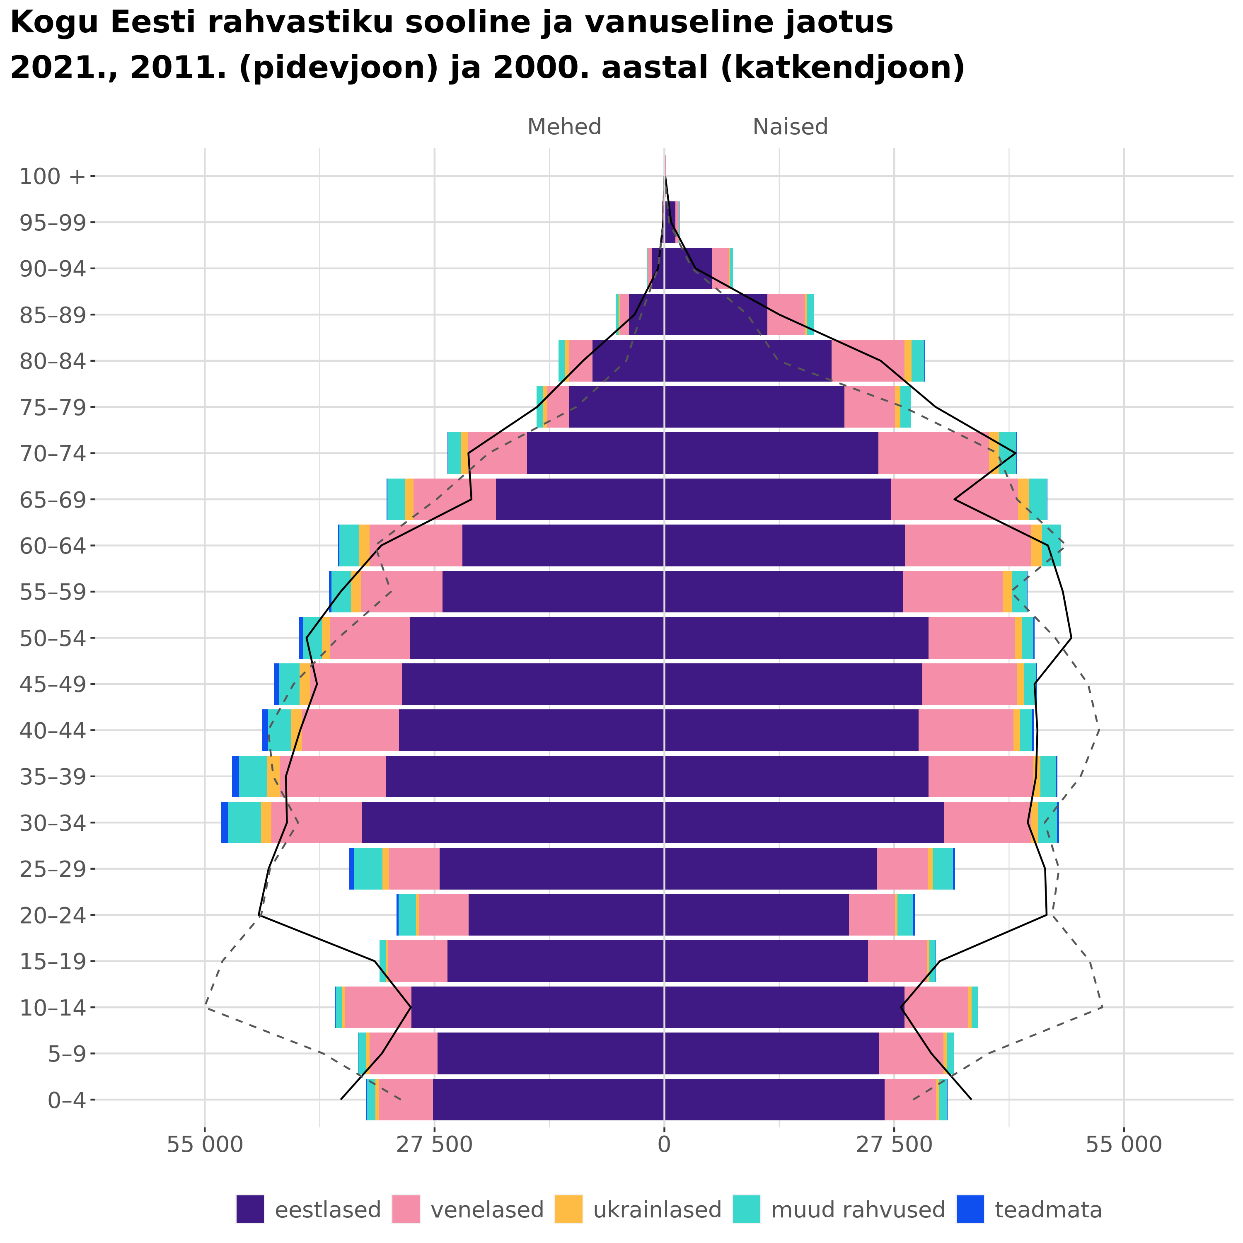 Eesti rahvastik soo, vanuse, rahvuse ja elukoha järgi kolme rahvaloenduse põhjal